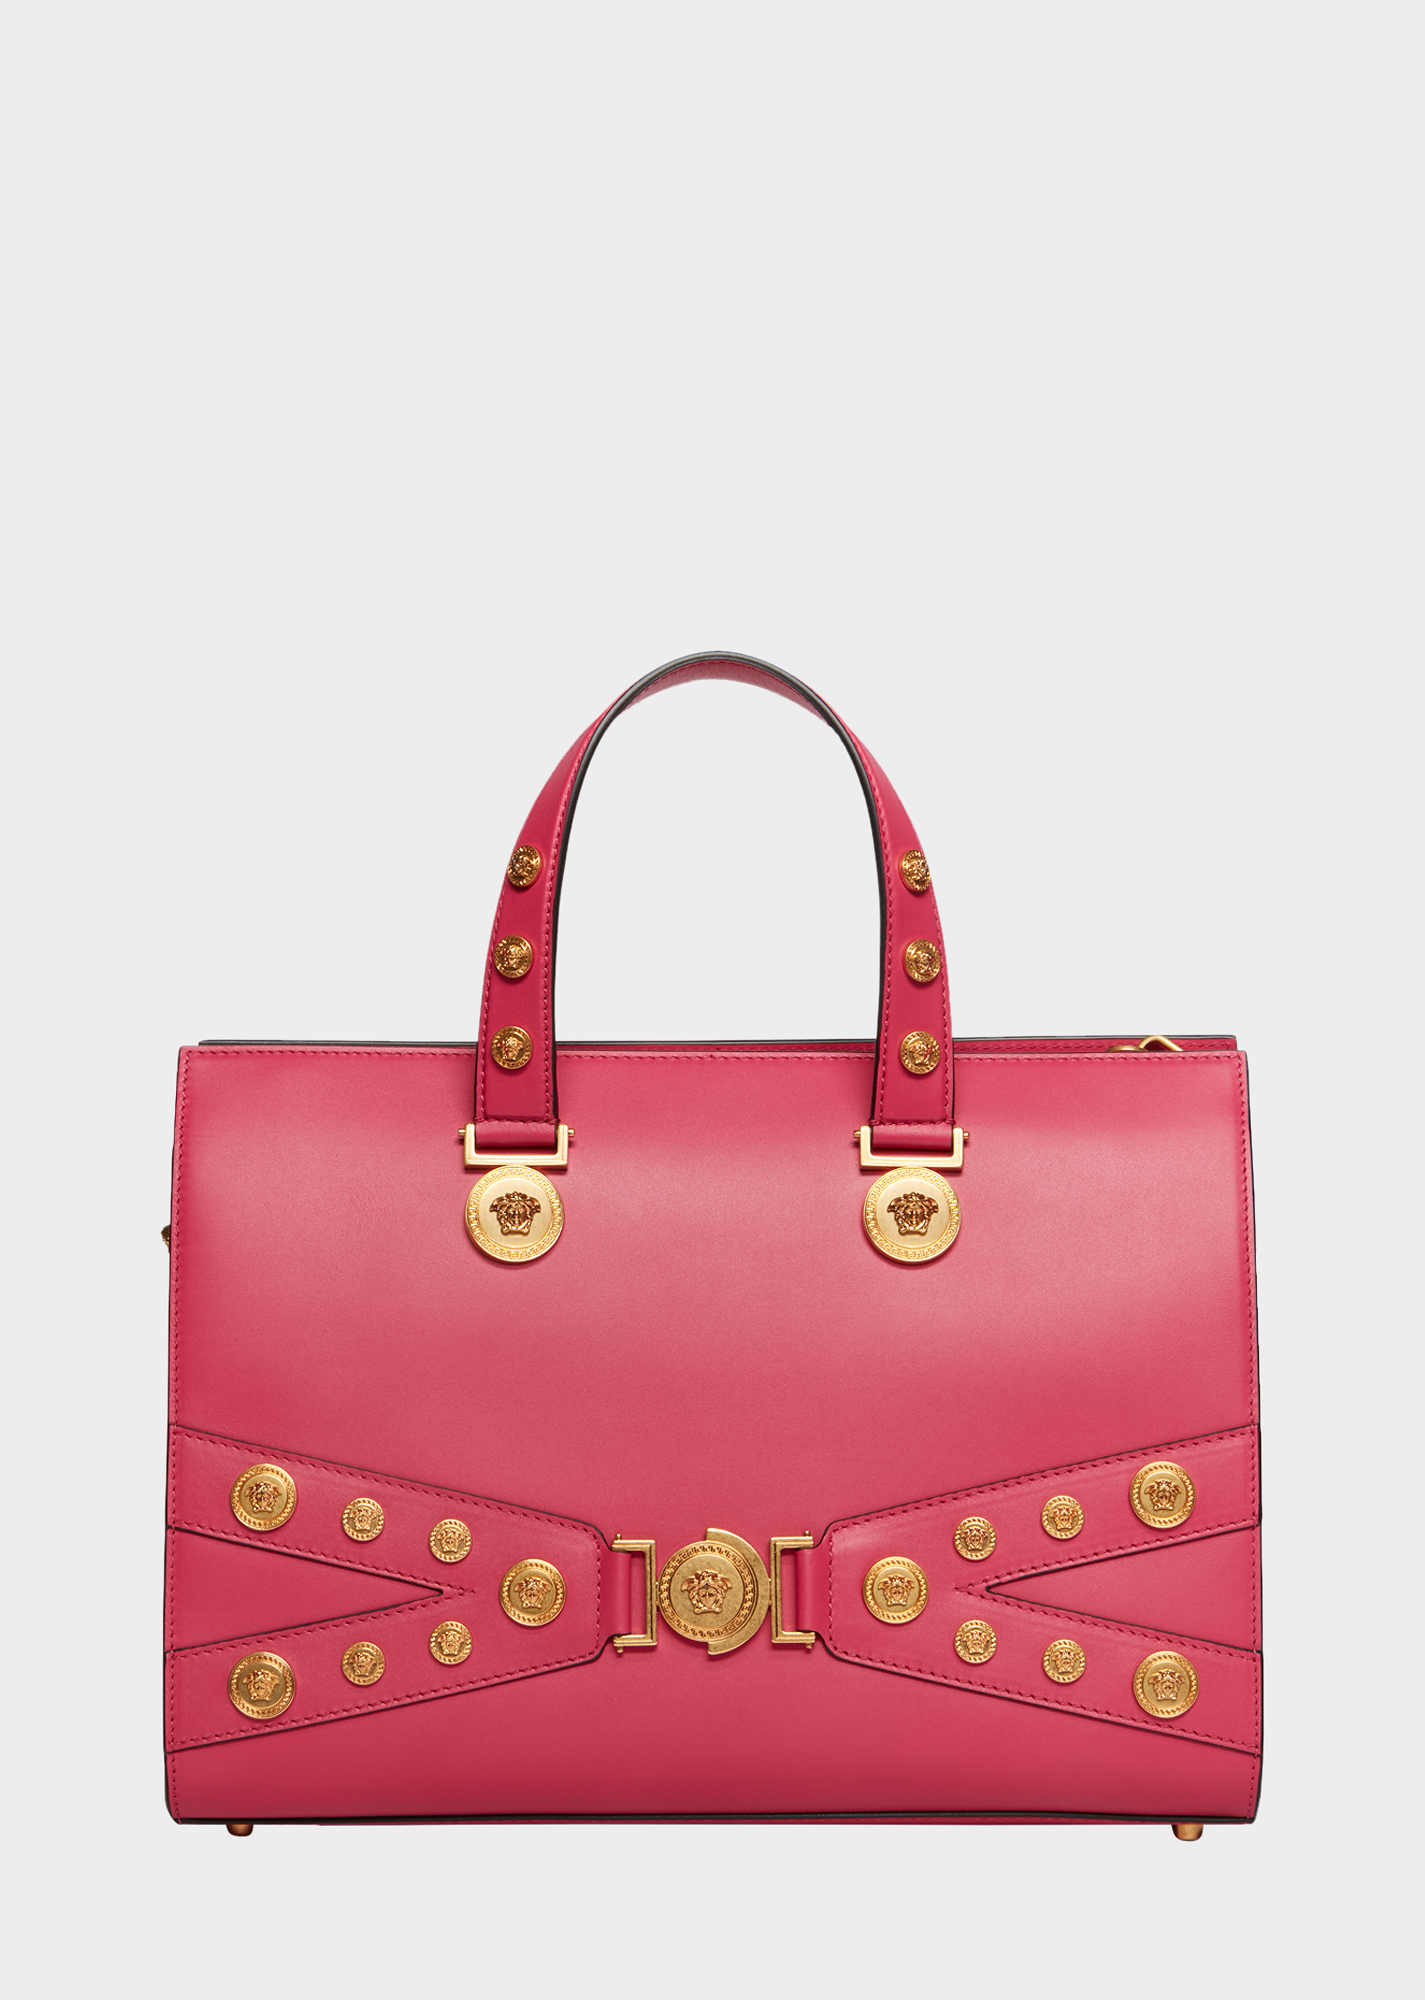 Pink Versace Bag Purse With Zipper | semashow.com